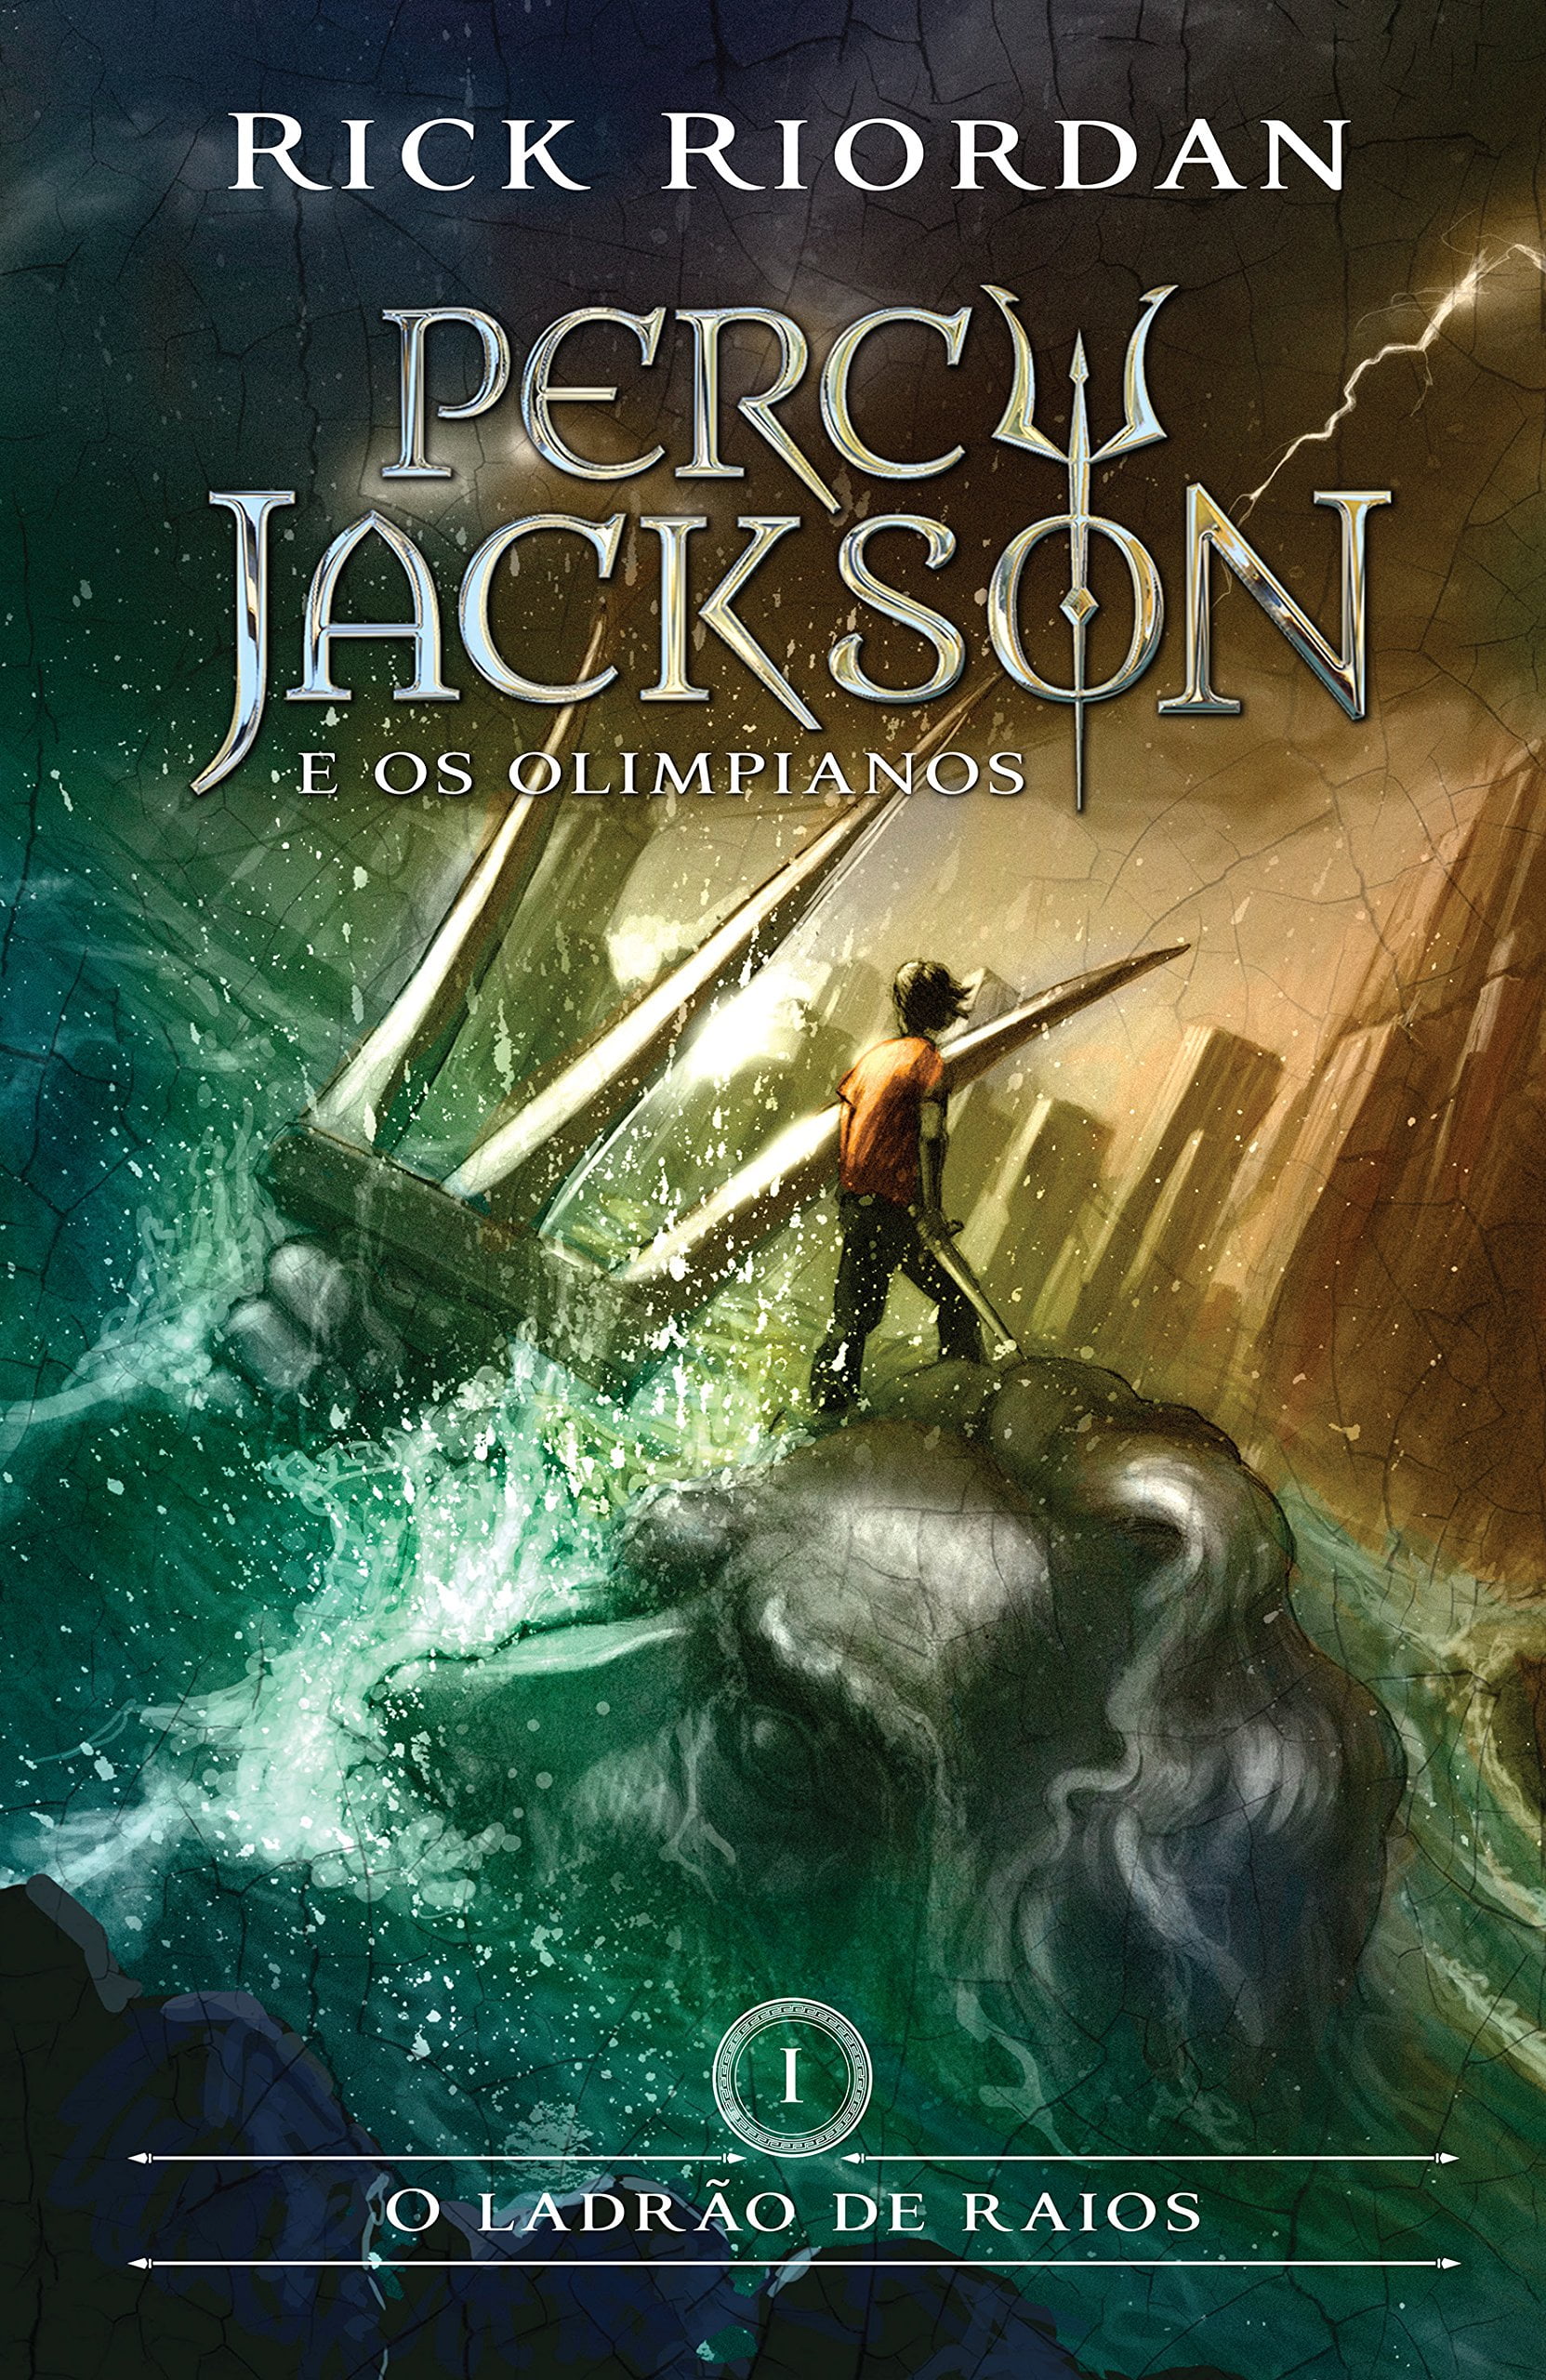 Resenha do Livro: Percy Jackson e o Ladrão de Raios